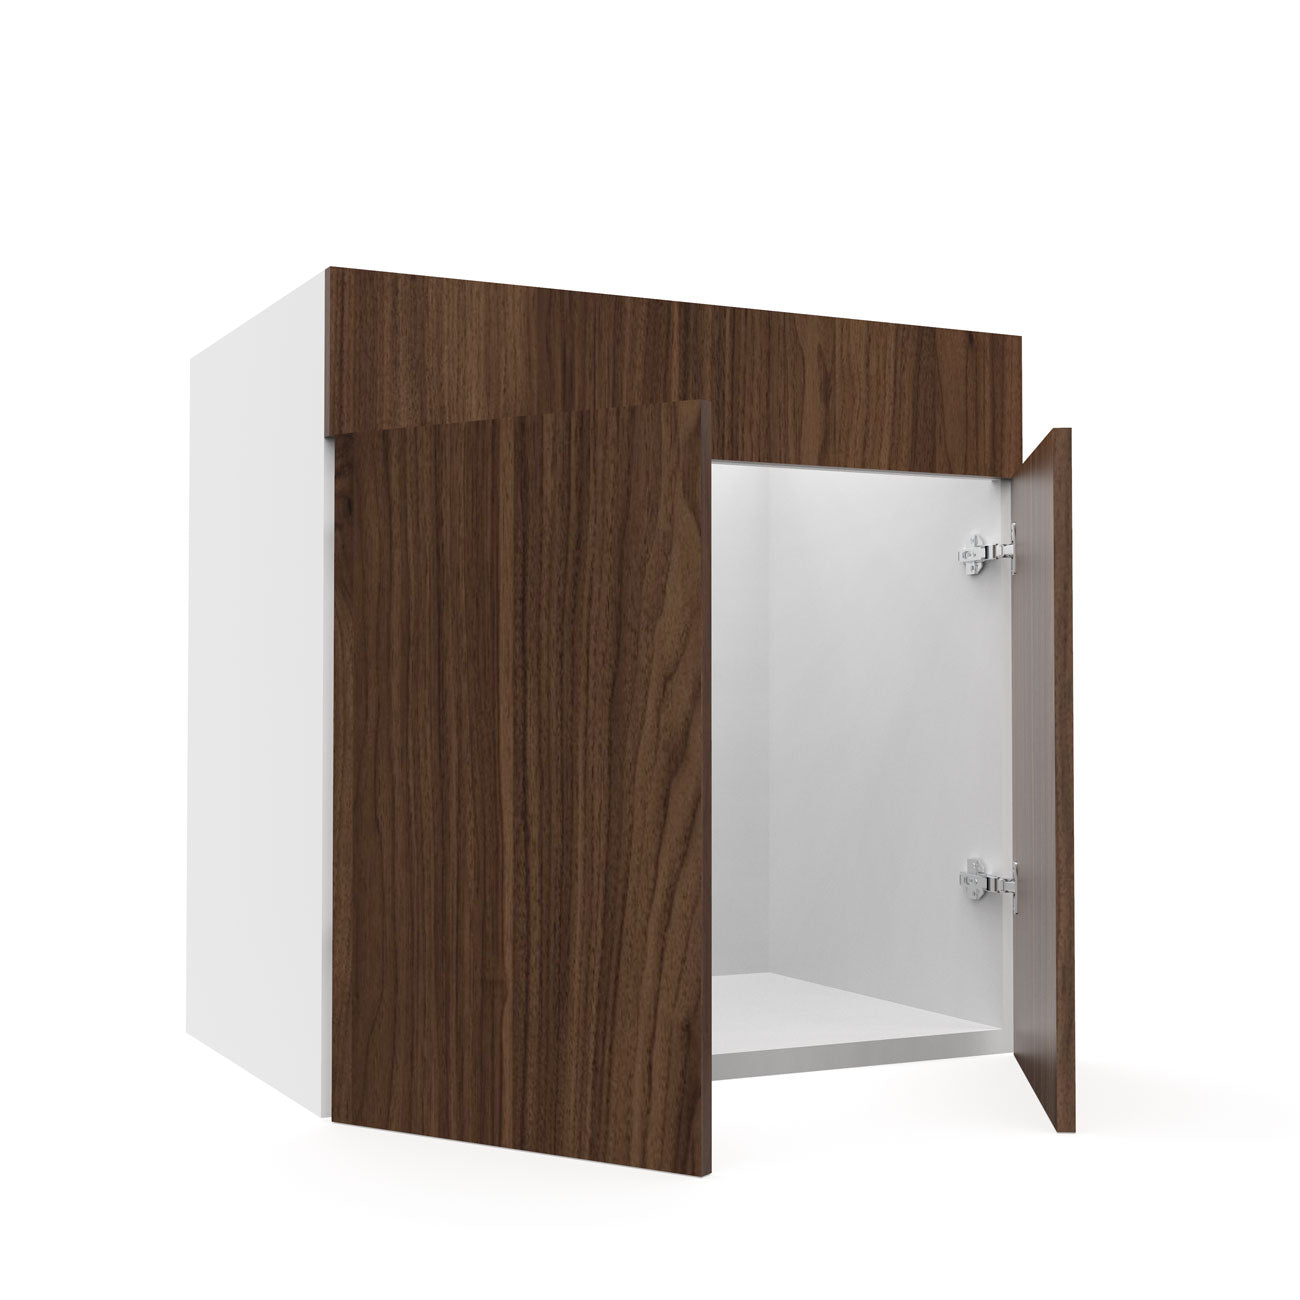 RTA - Walnut - Sink Vanity Cabinets | 30"W x 30"H x 21"D